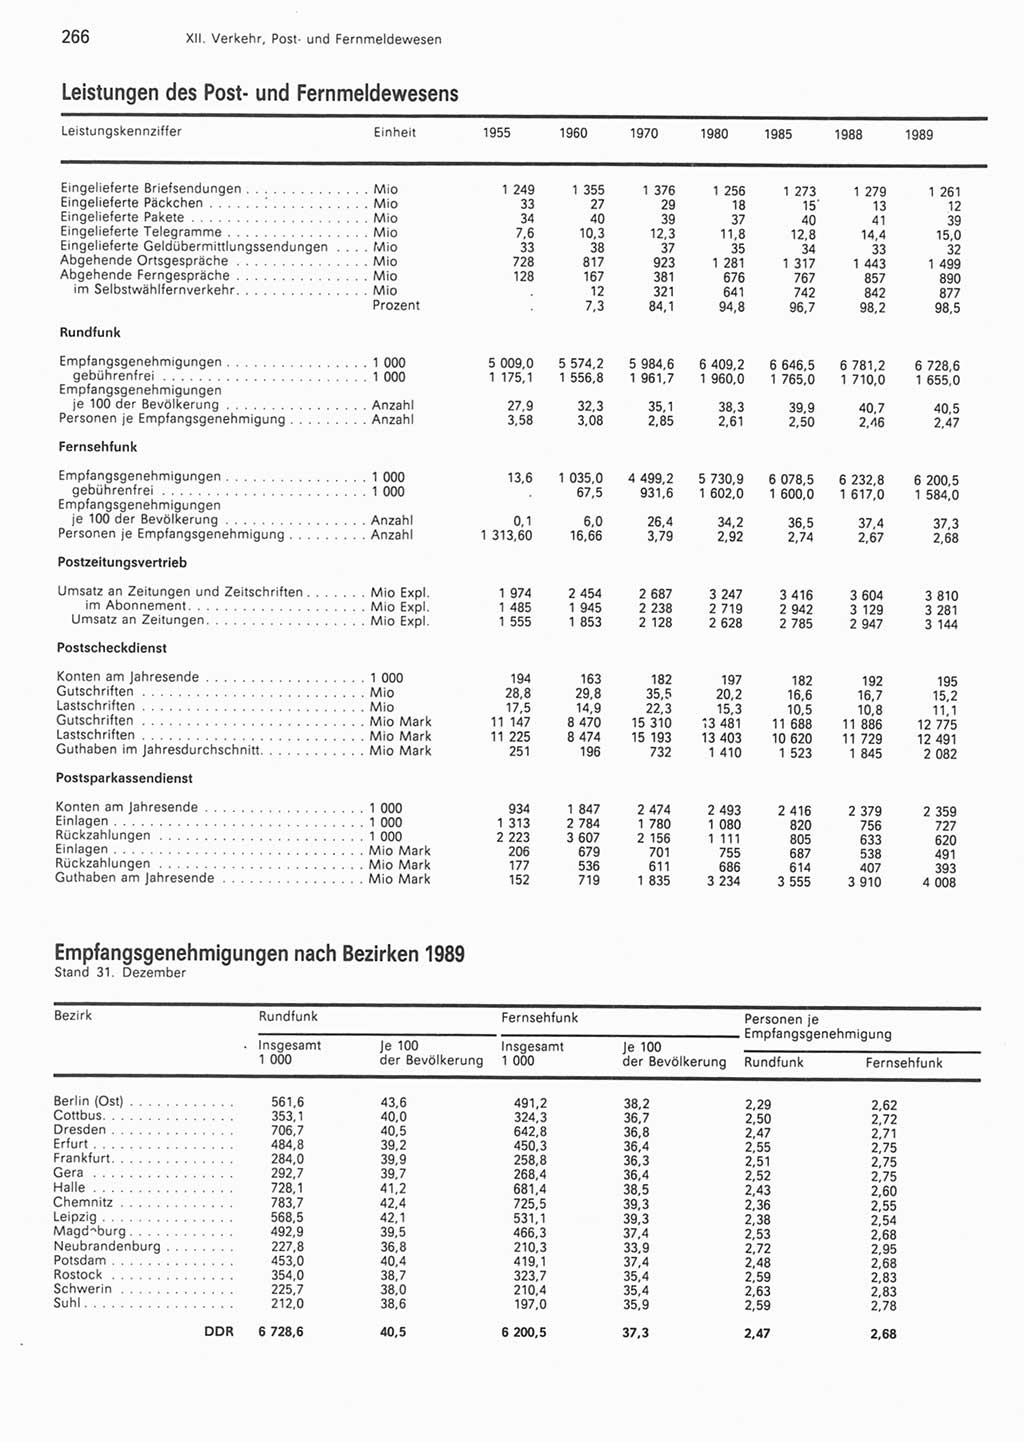 Statistisches Jahrbuch der Deutschen Demokratischen Republik (DDR) 1990, Seite 266 (Stat. Jb. DDR 1990, S. 266)